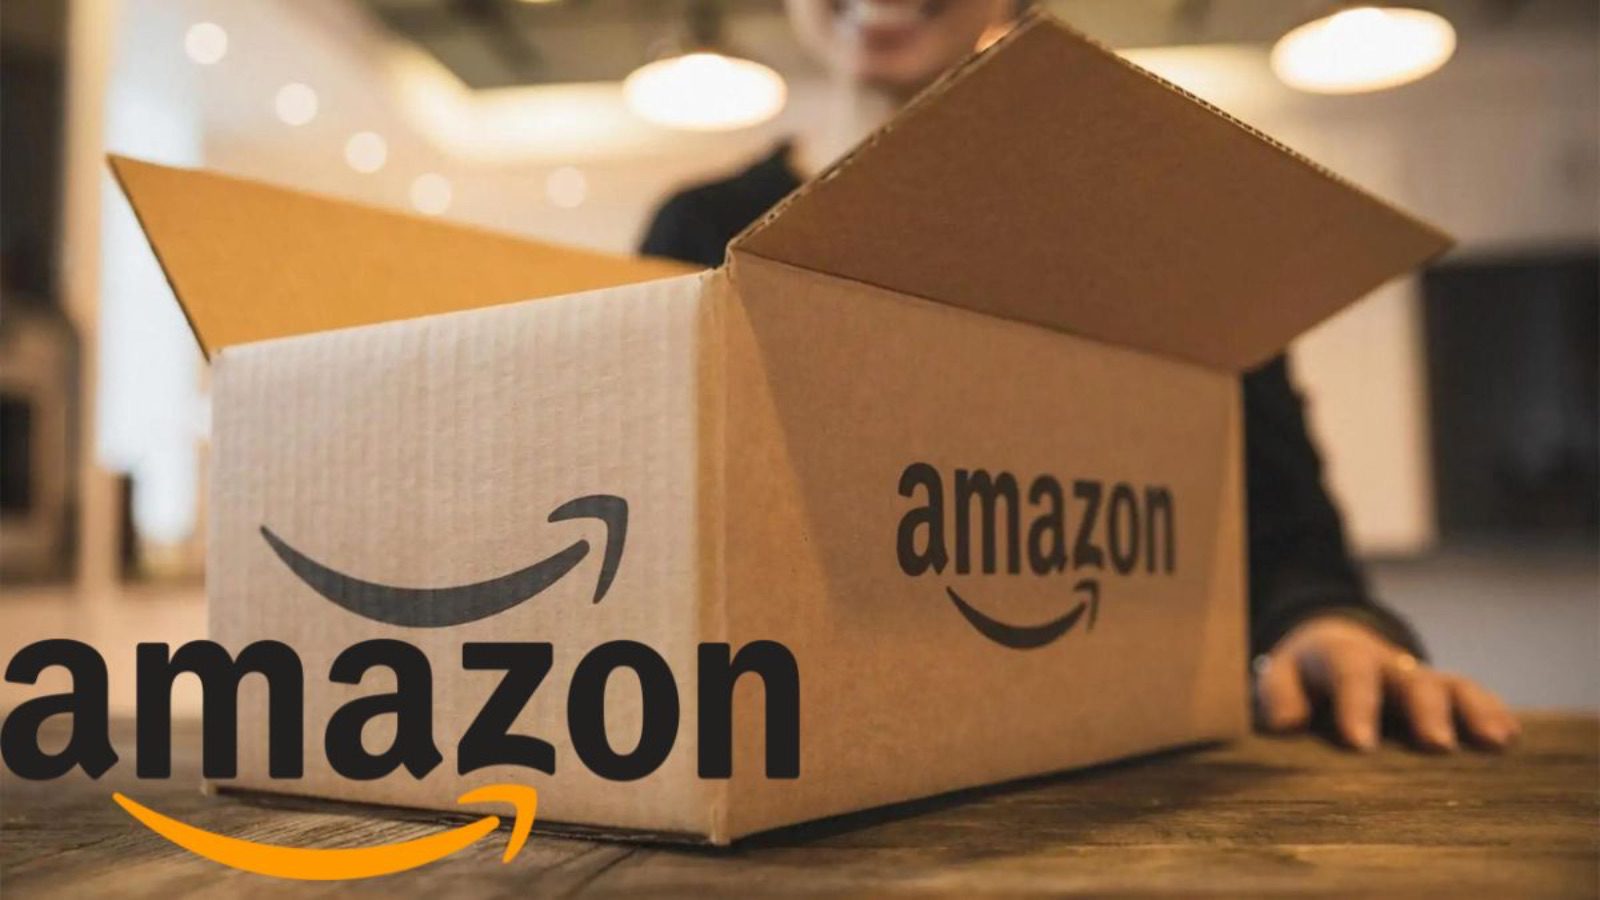 Amazon è FOLLE oggi, le offerte al 70% sono disponibili gratis 